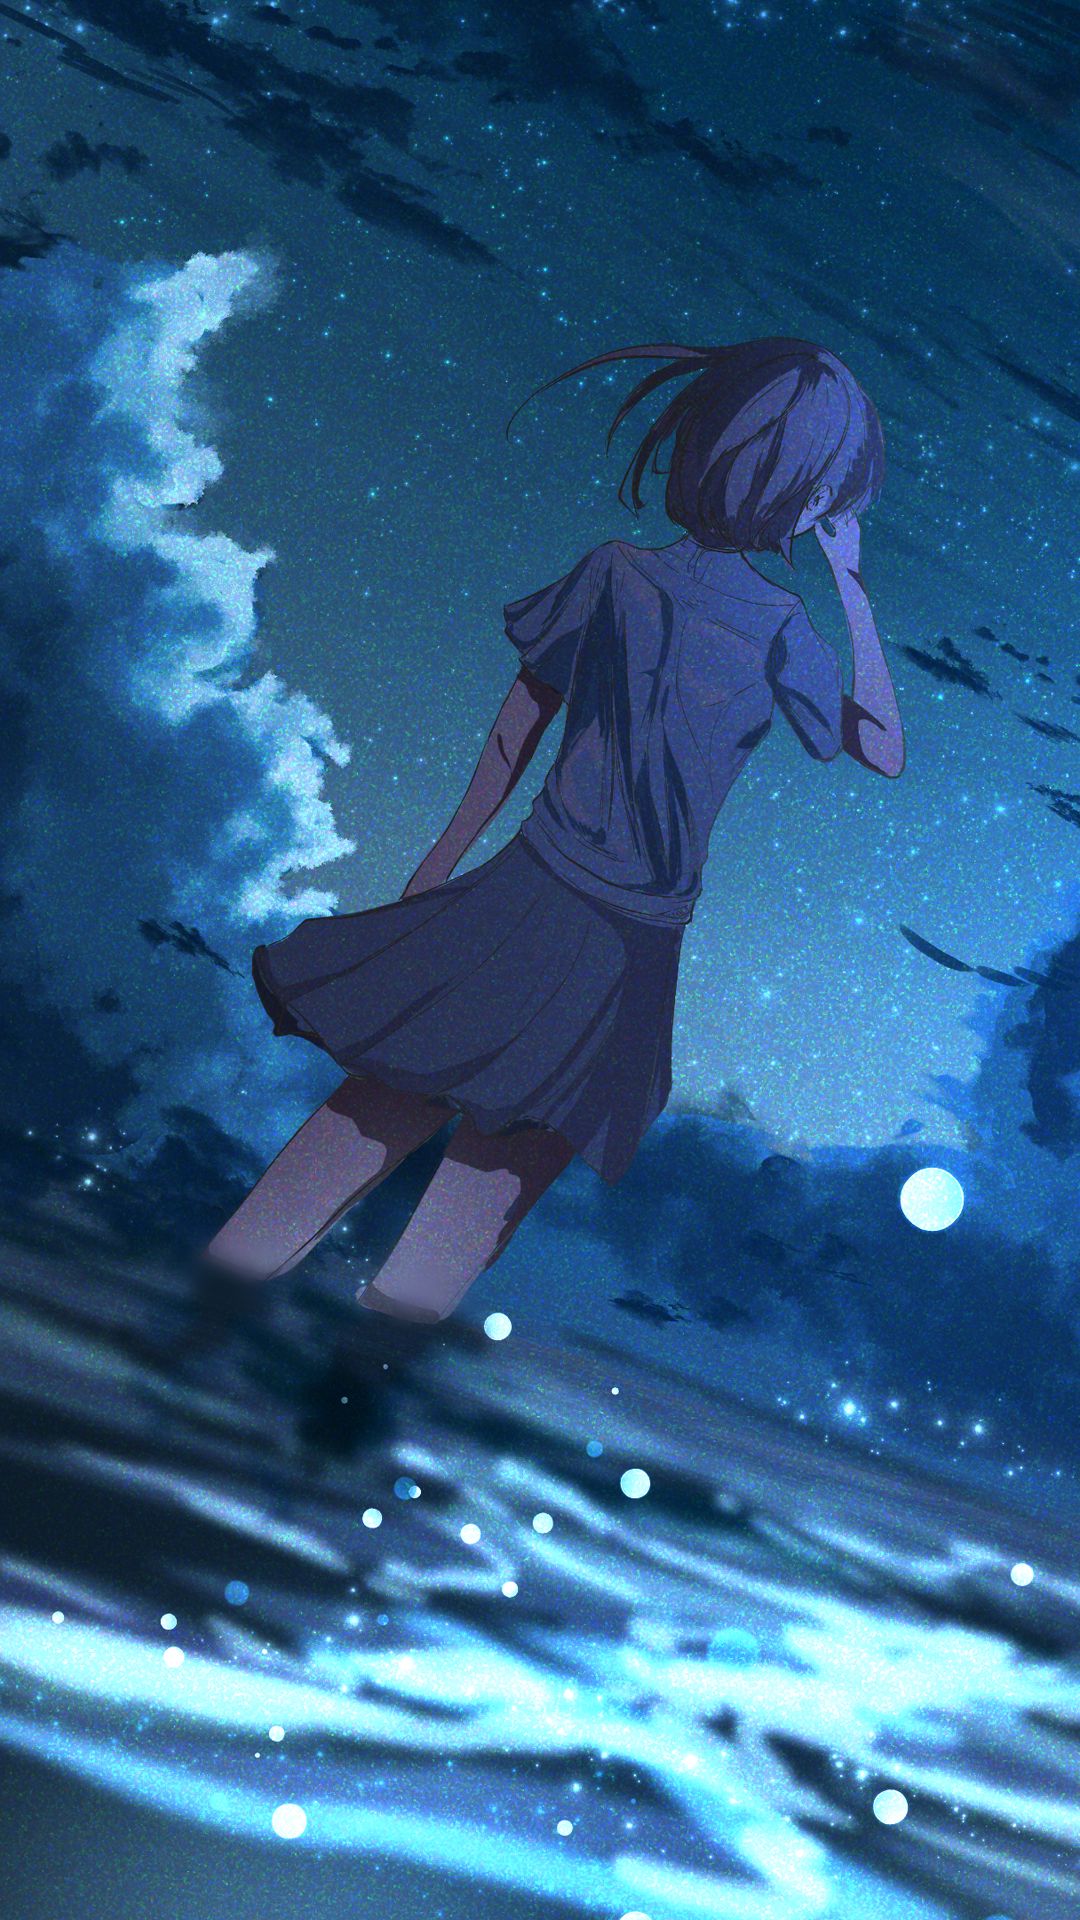 Hãy trải nghiệm cảm giác đầy thú vị của phong cảnh đêm qua những hình nền anime phong cảnh đêm. Với những họa tiết đẹp mắt và sắc màu lung linh, bạn sẽ thấy ngỡ ngàng trước sự đẹp đẽ và hoang dã của thiên nhiên đêm tối.